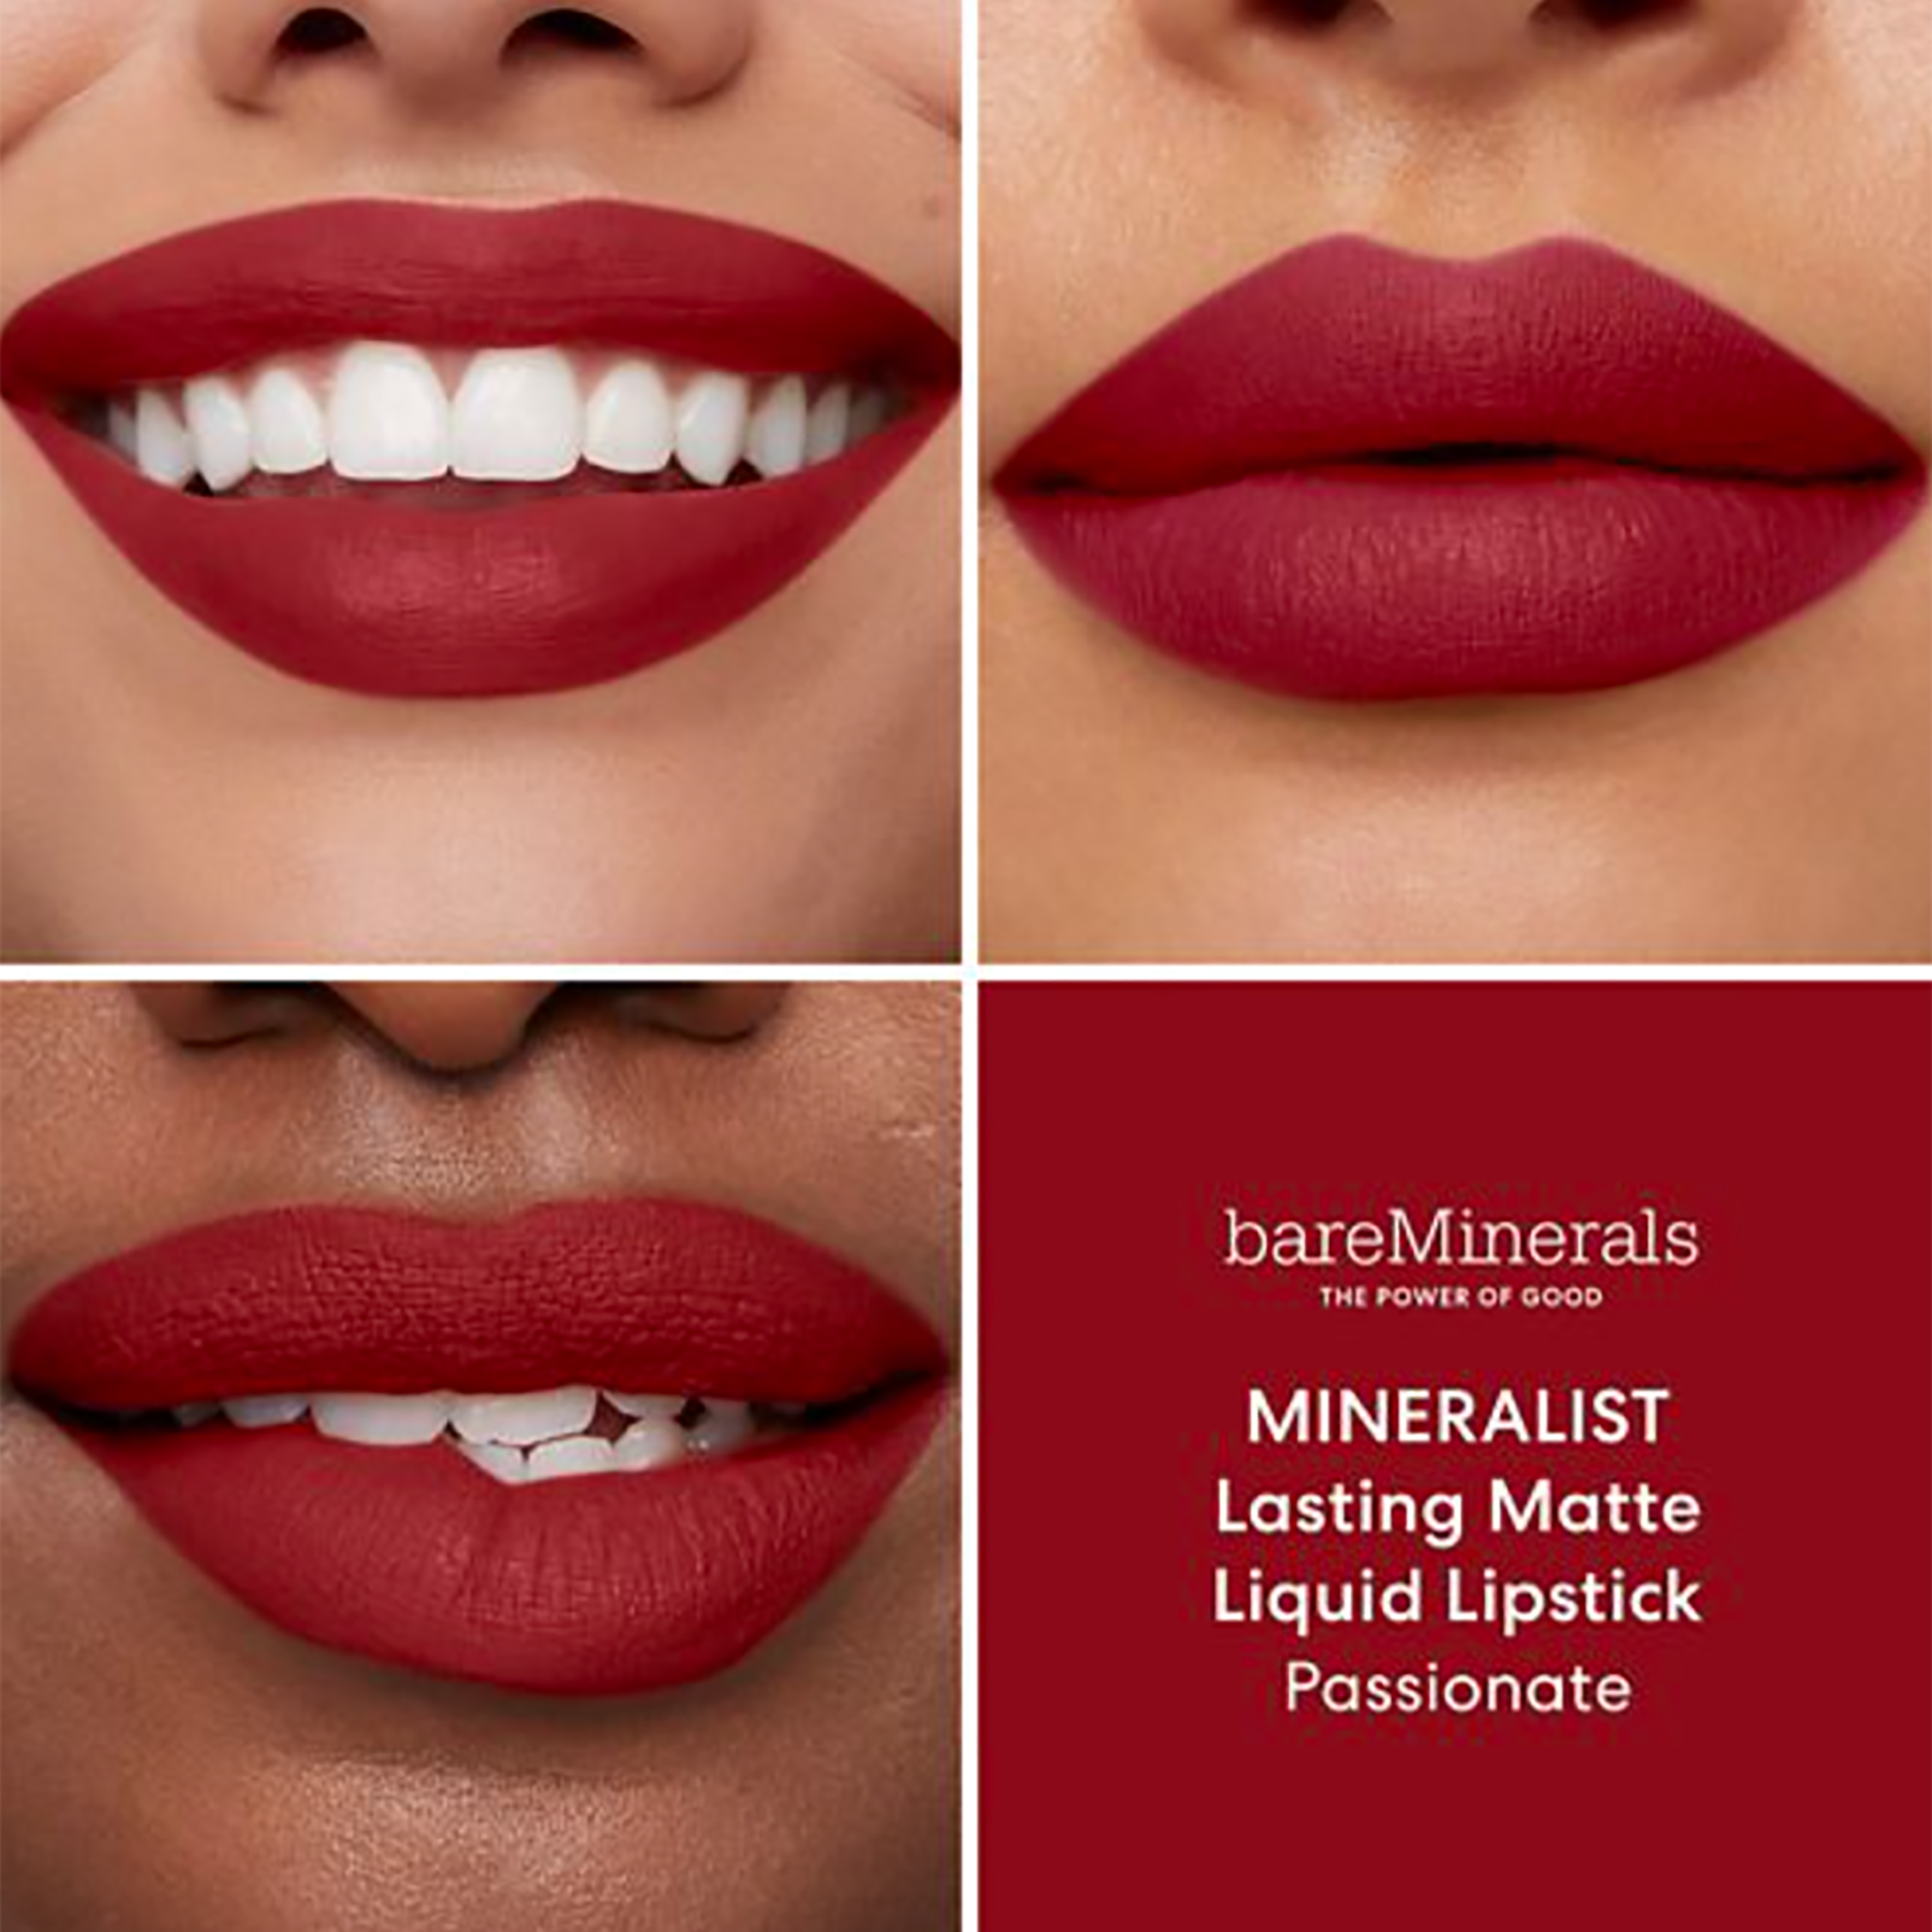 Bare Minerals Mineralist Lasting Matte Liquid Lipstick / PASSIONATE